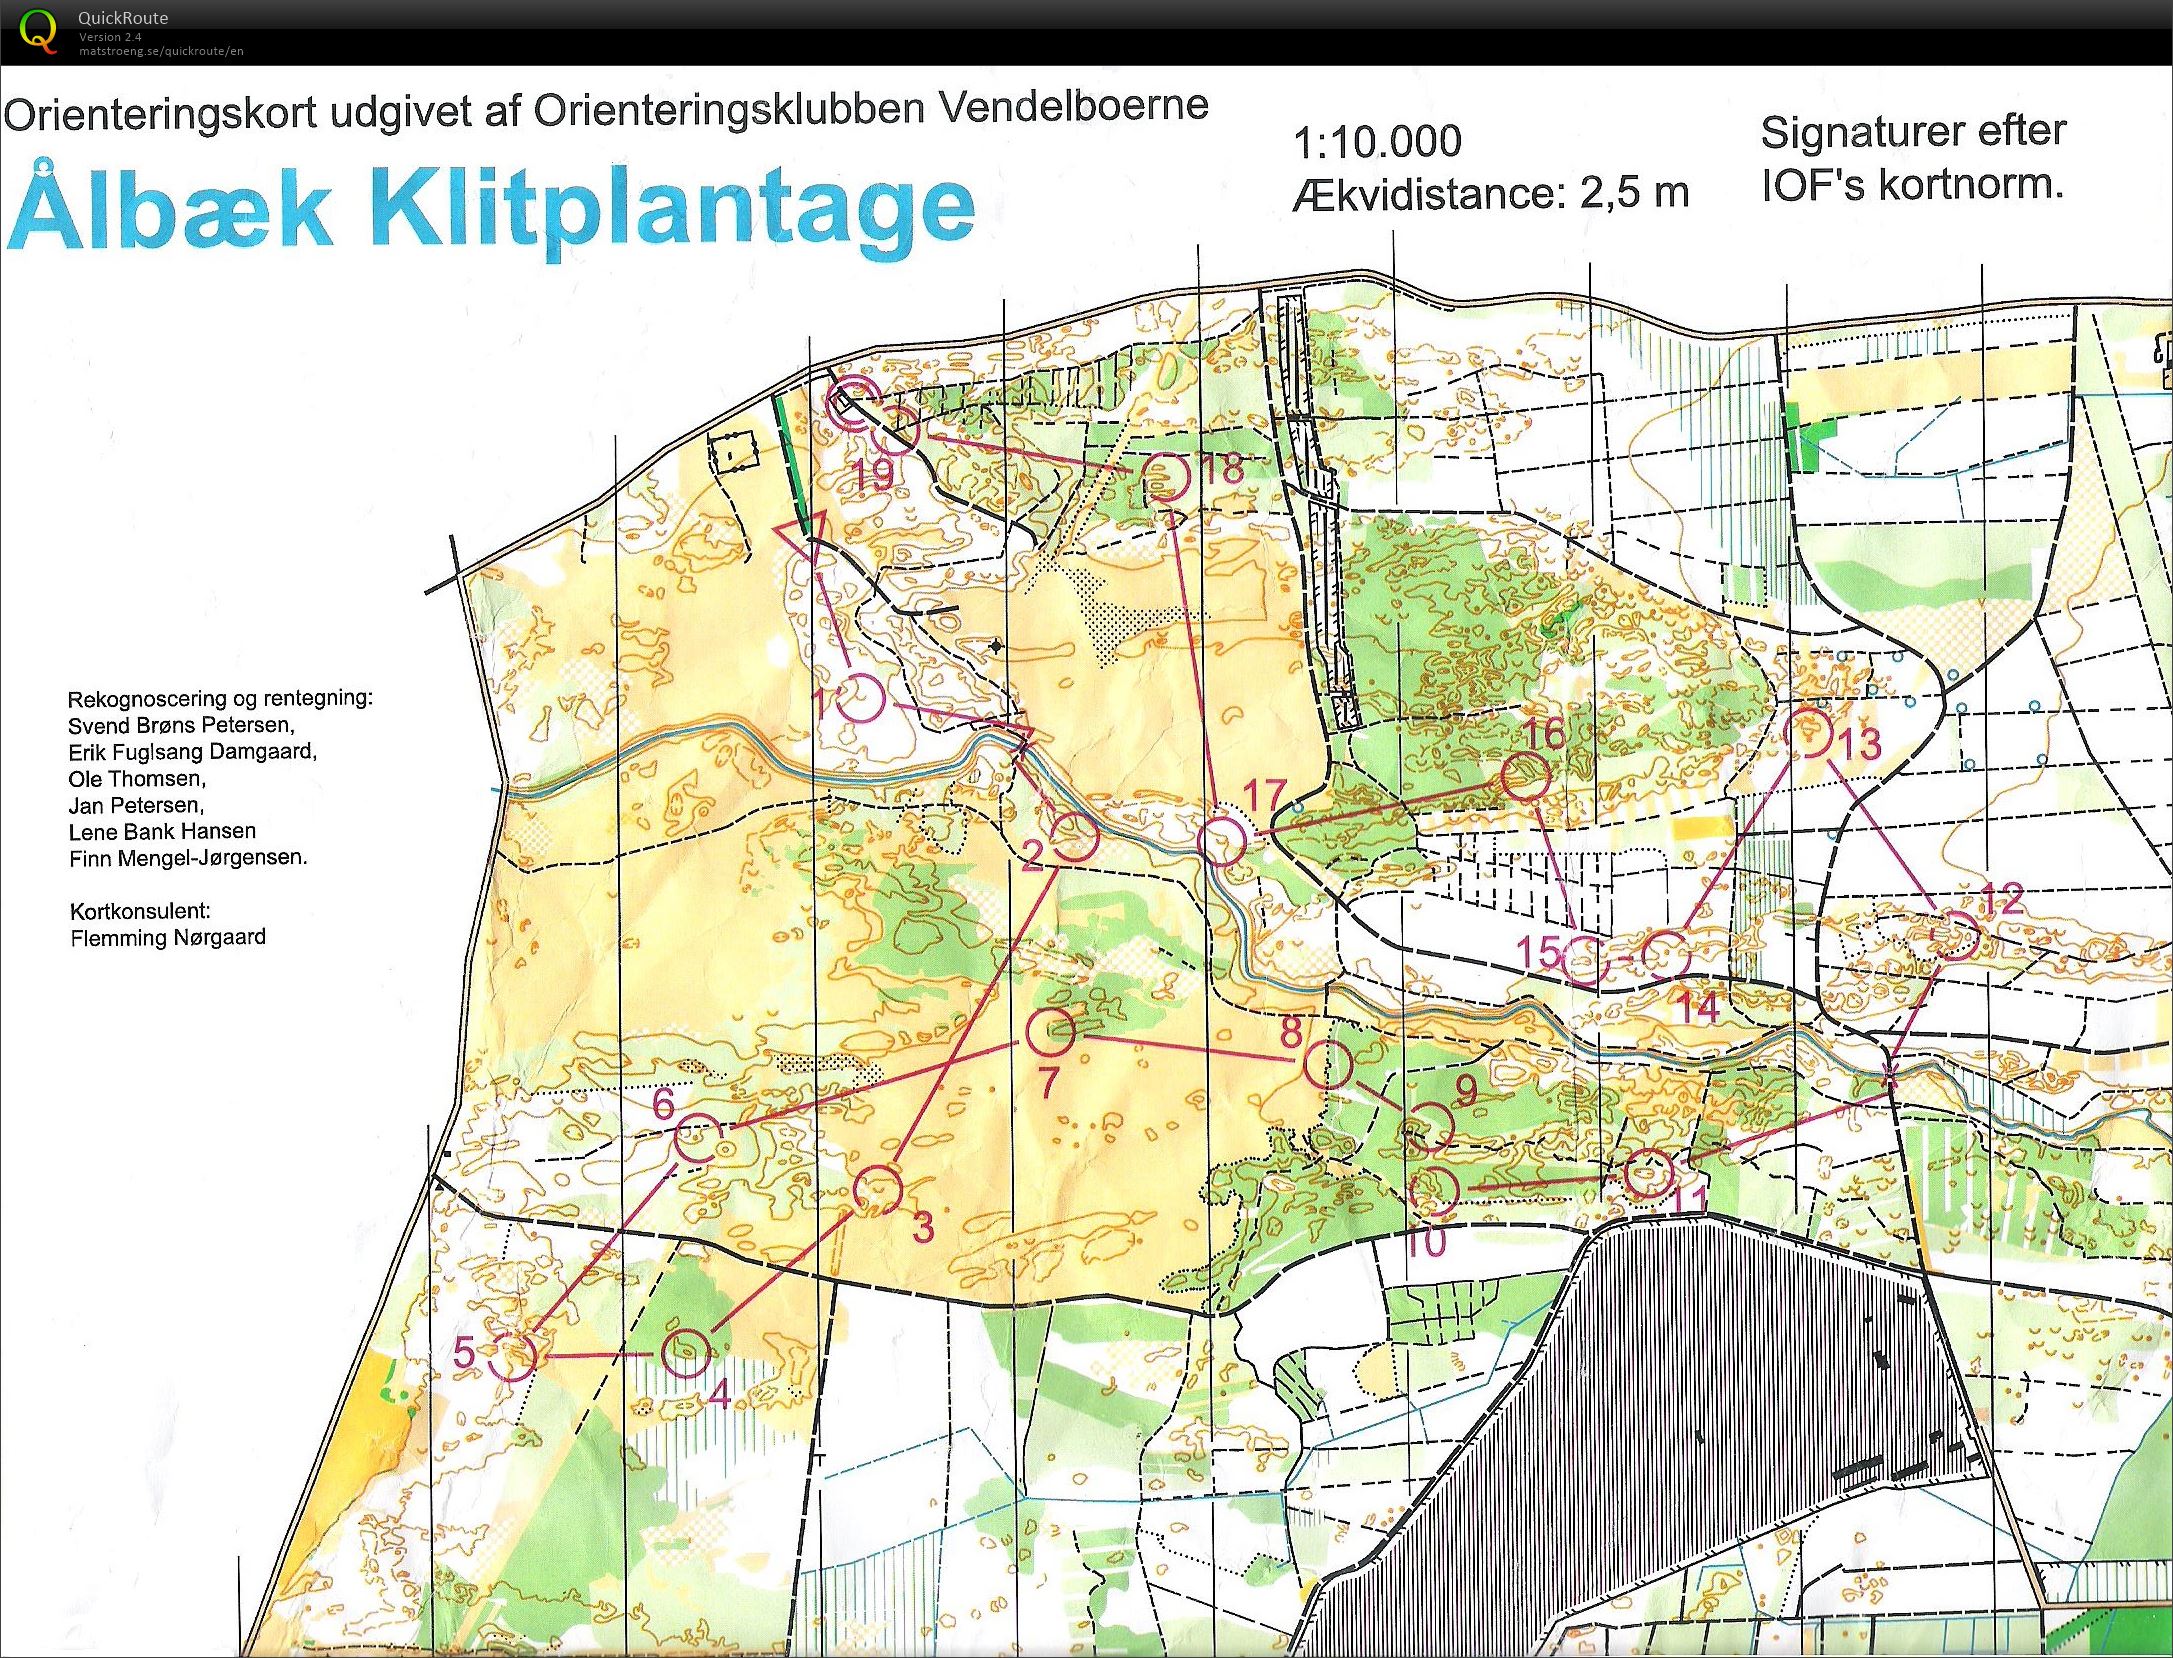 NJM Natløb Ålbæk Klitplantage - H45 - 6.2 km. (24.09.2014)